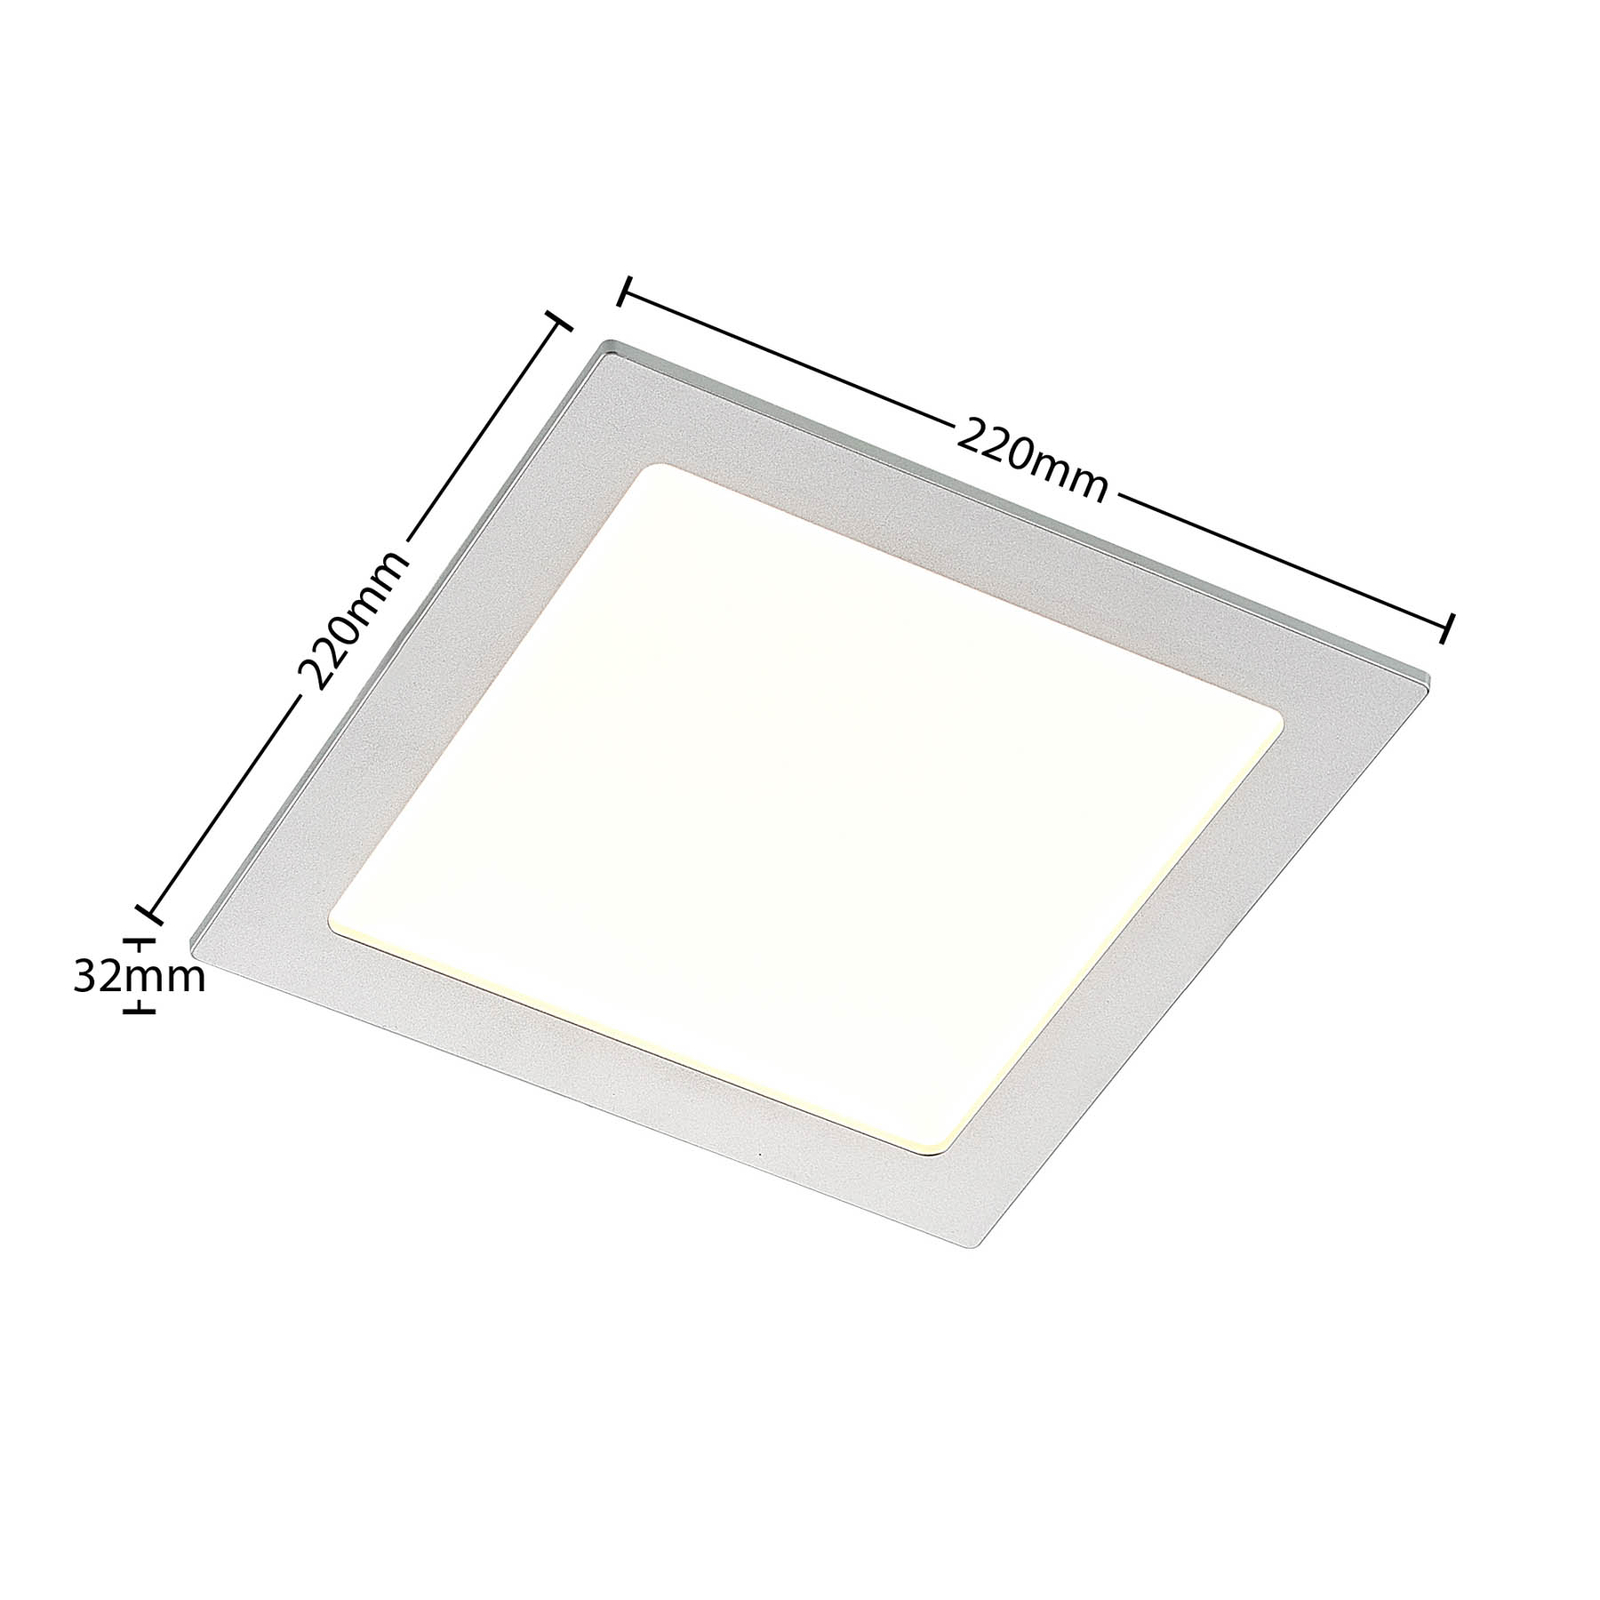 Prios Helina empotrada LED, plata, 22 cm, 18 W